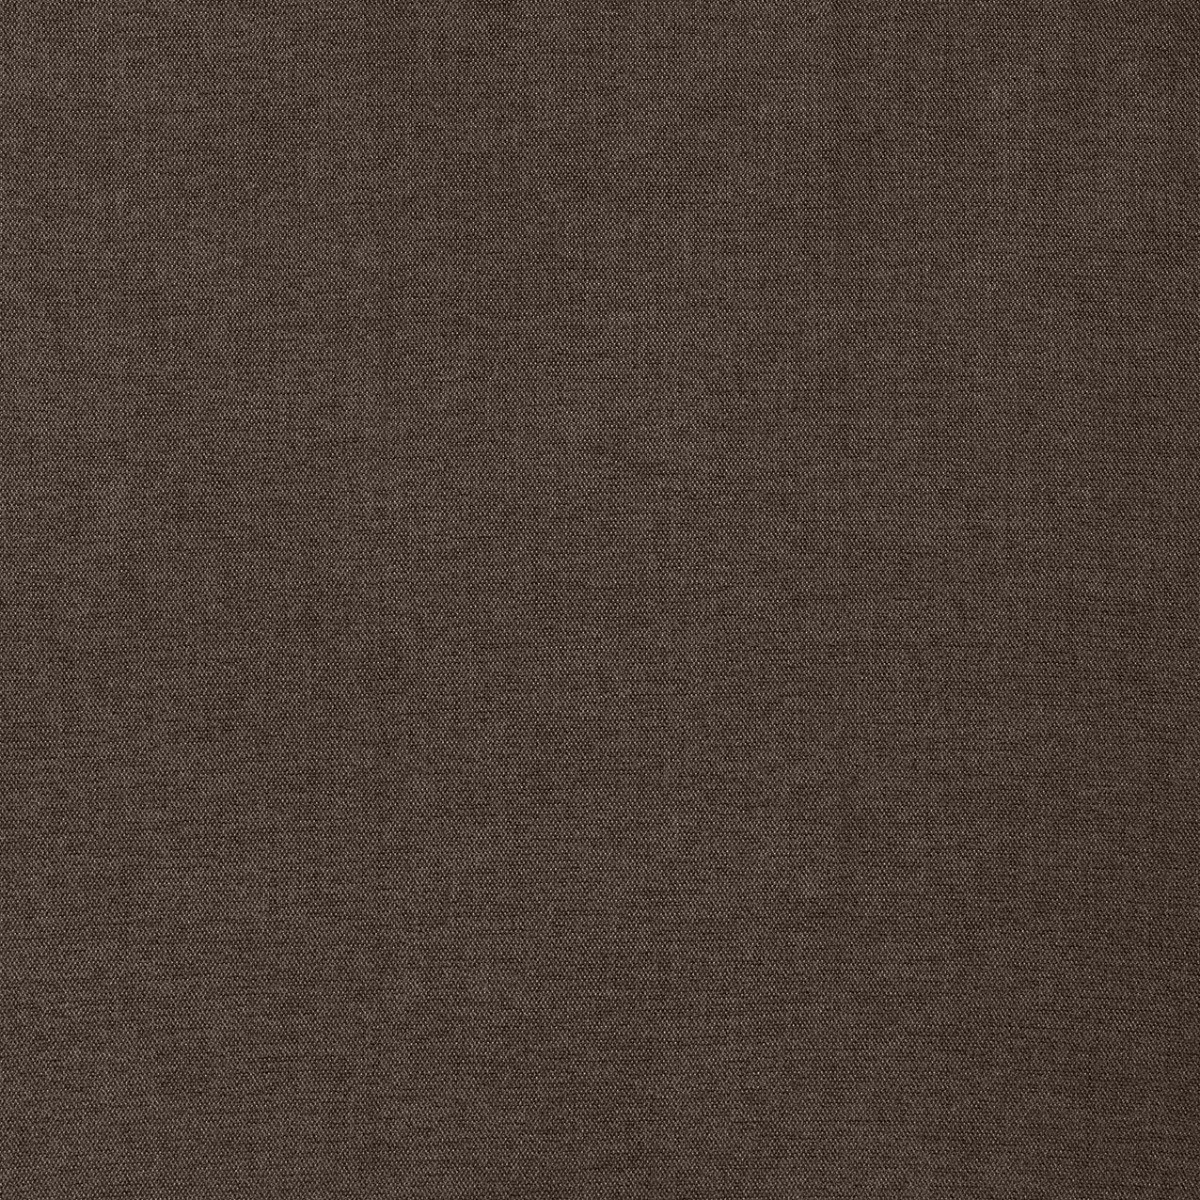  Портьерная ткань SARA CHOCOLATE, ширина 300 см  - Фото